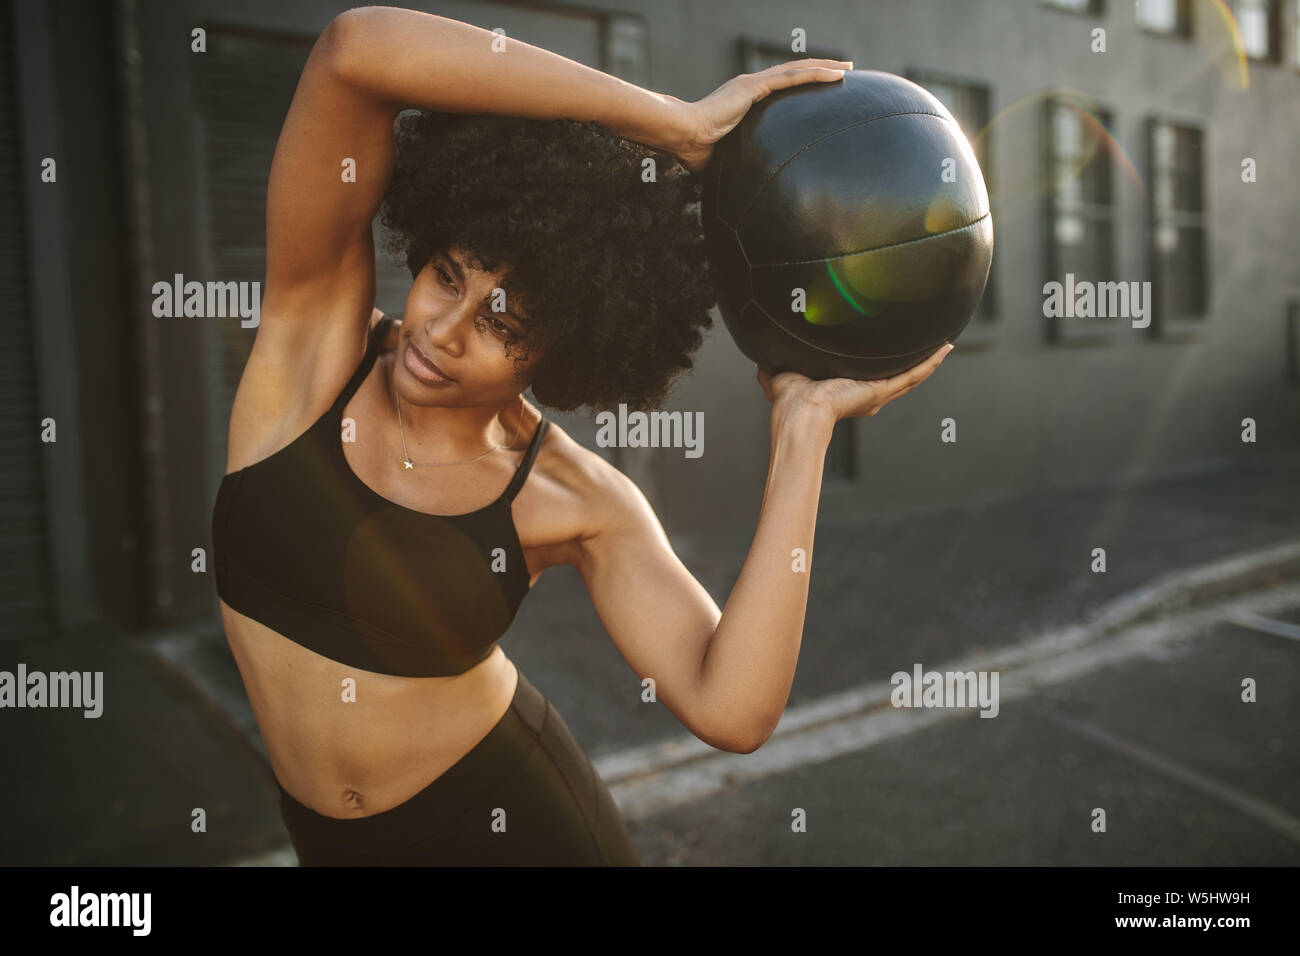 Sportlerin zu tun stretching Übung mit medizinball. Muskulöse Frau Trainieren mit Fitness Ball im Freien. Stockfoto